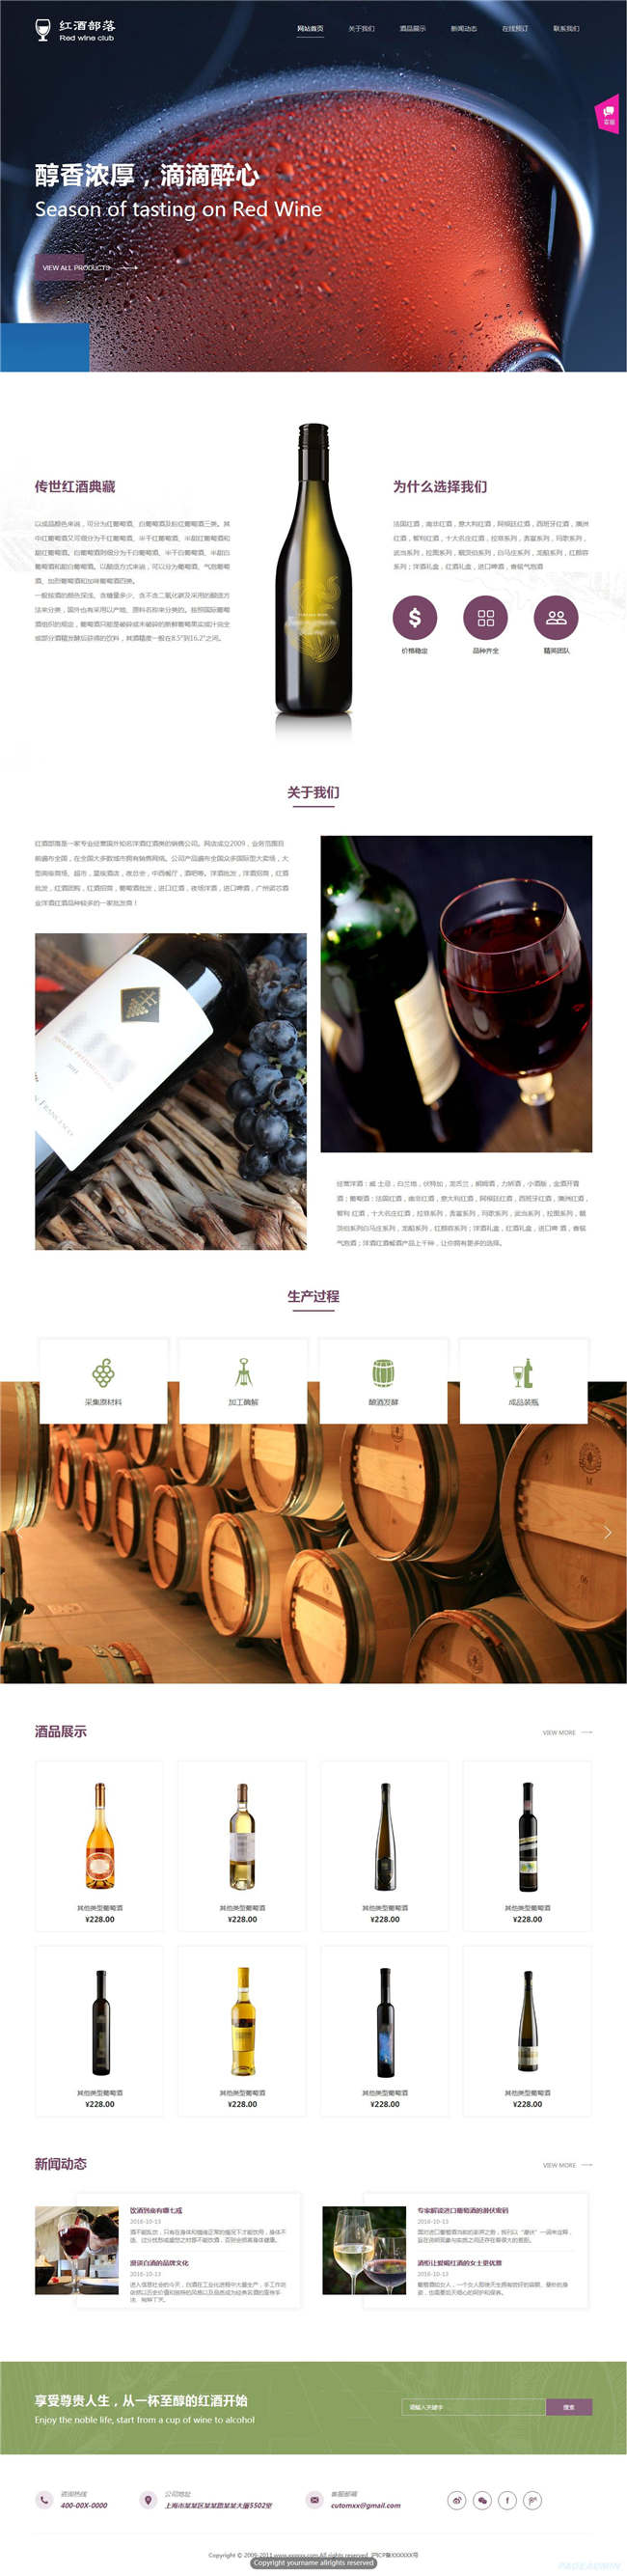 红酒葡萄酒食品饮料生鲜茶酒网站WP整站模板(含手机版)预览图